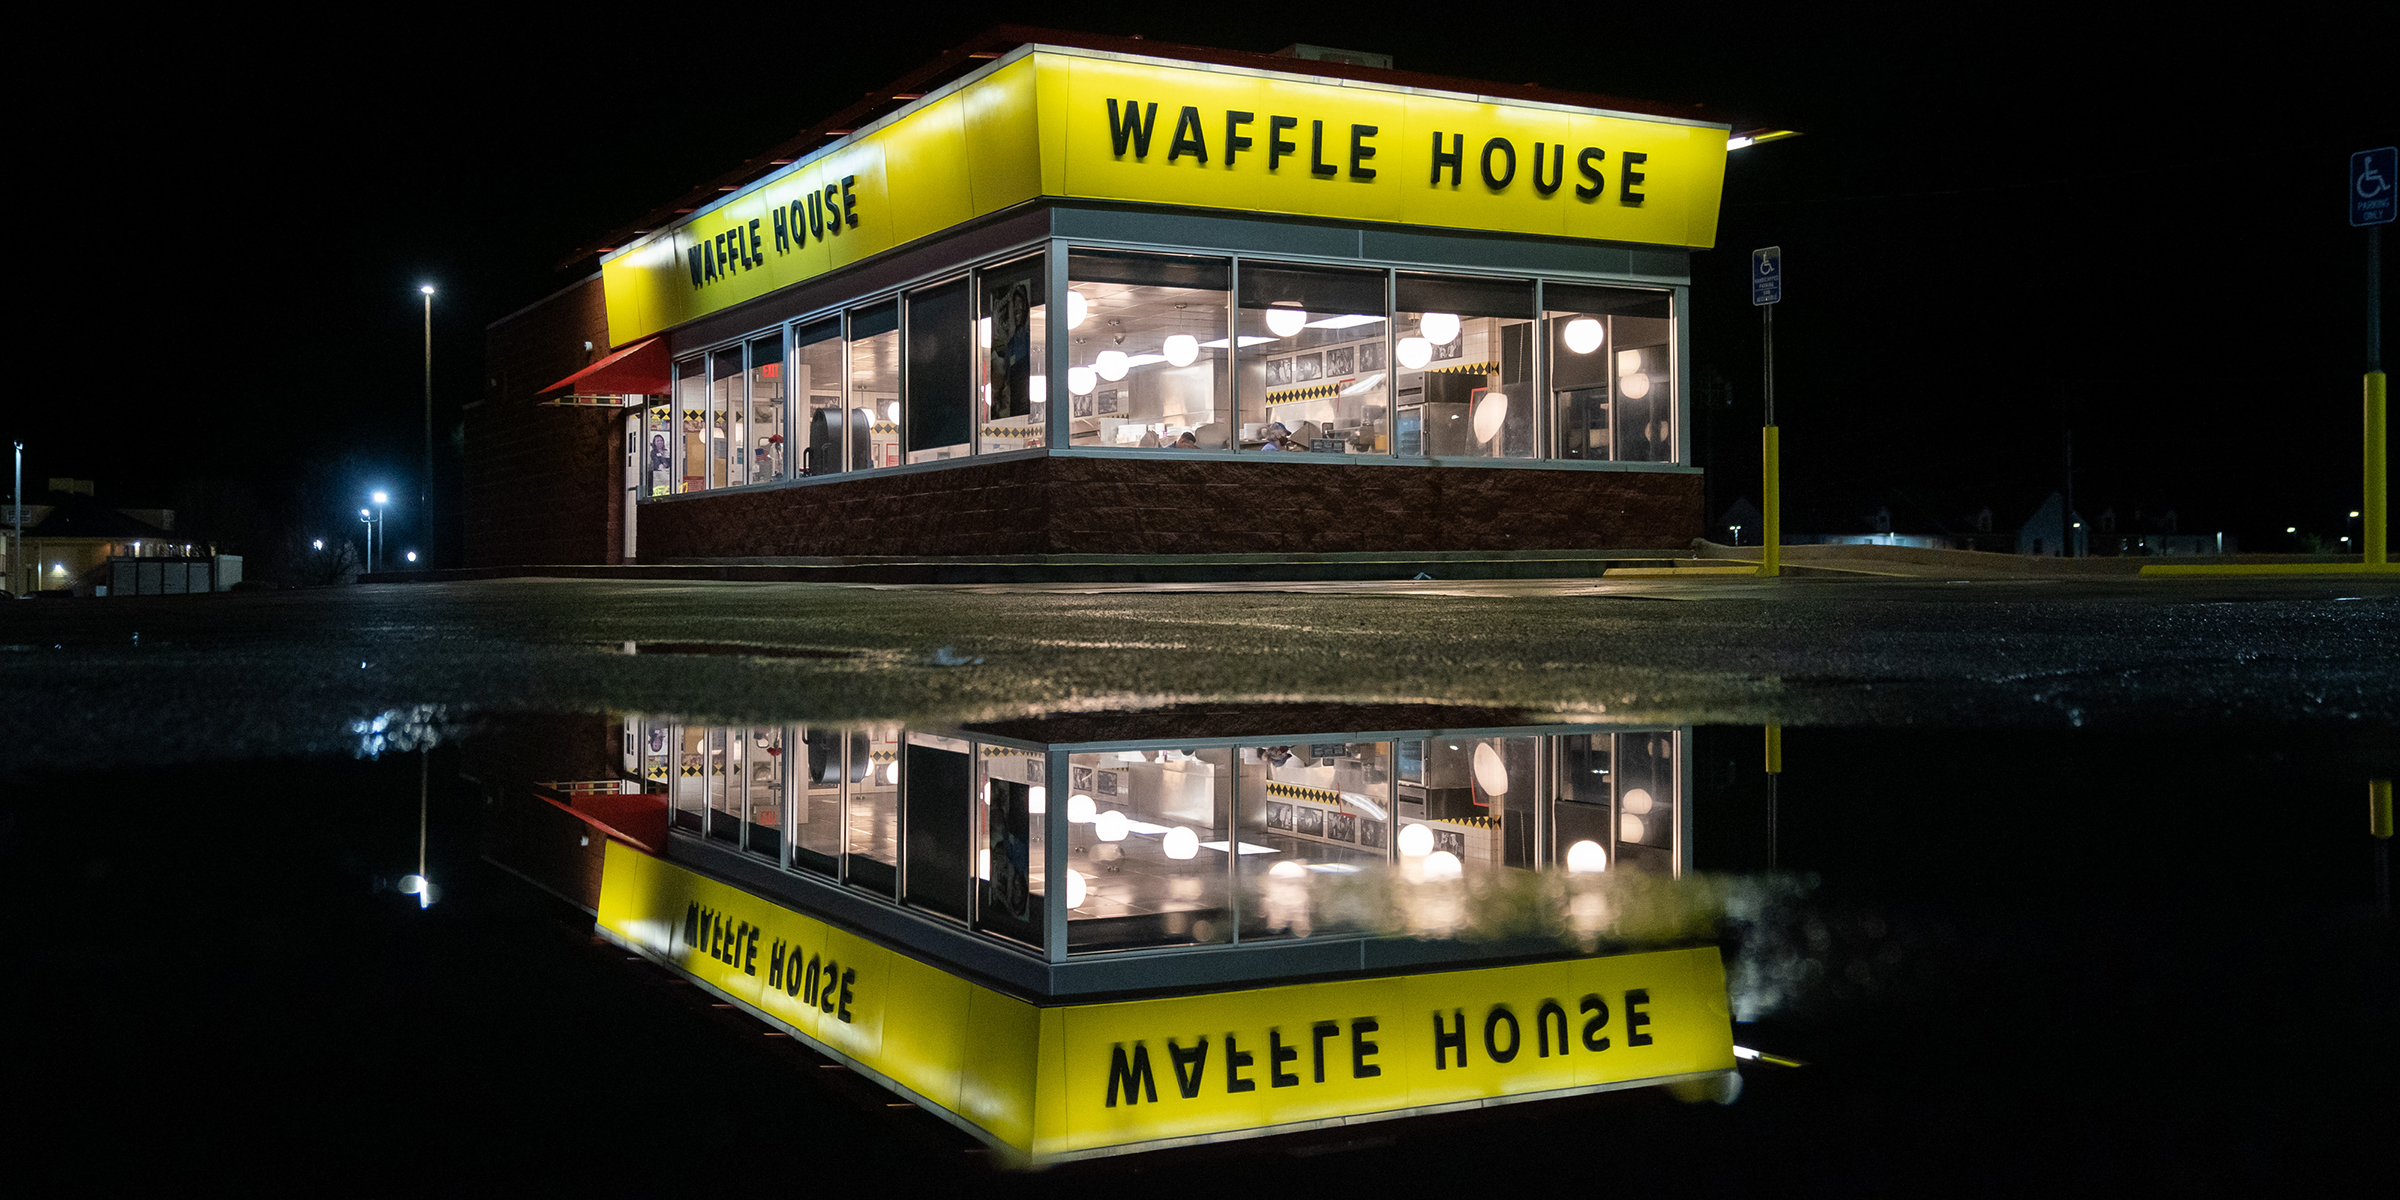 3am things - waffle house - Waffle House Wifre House Wwe 28